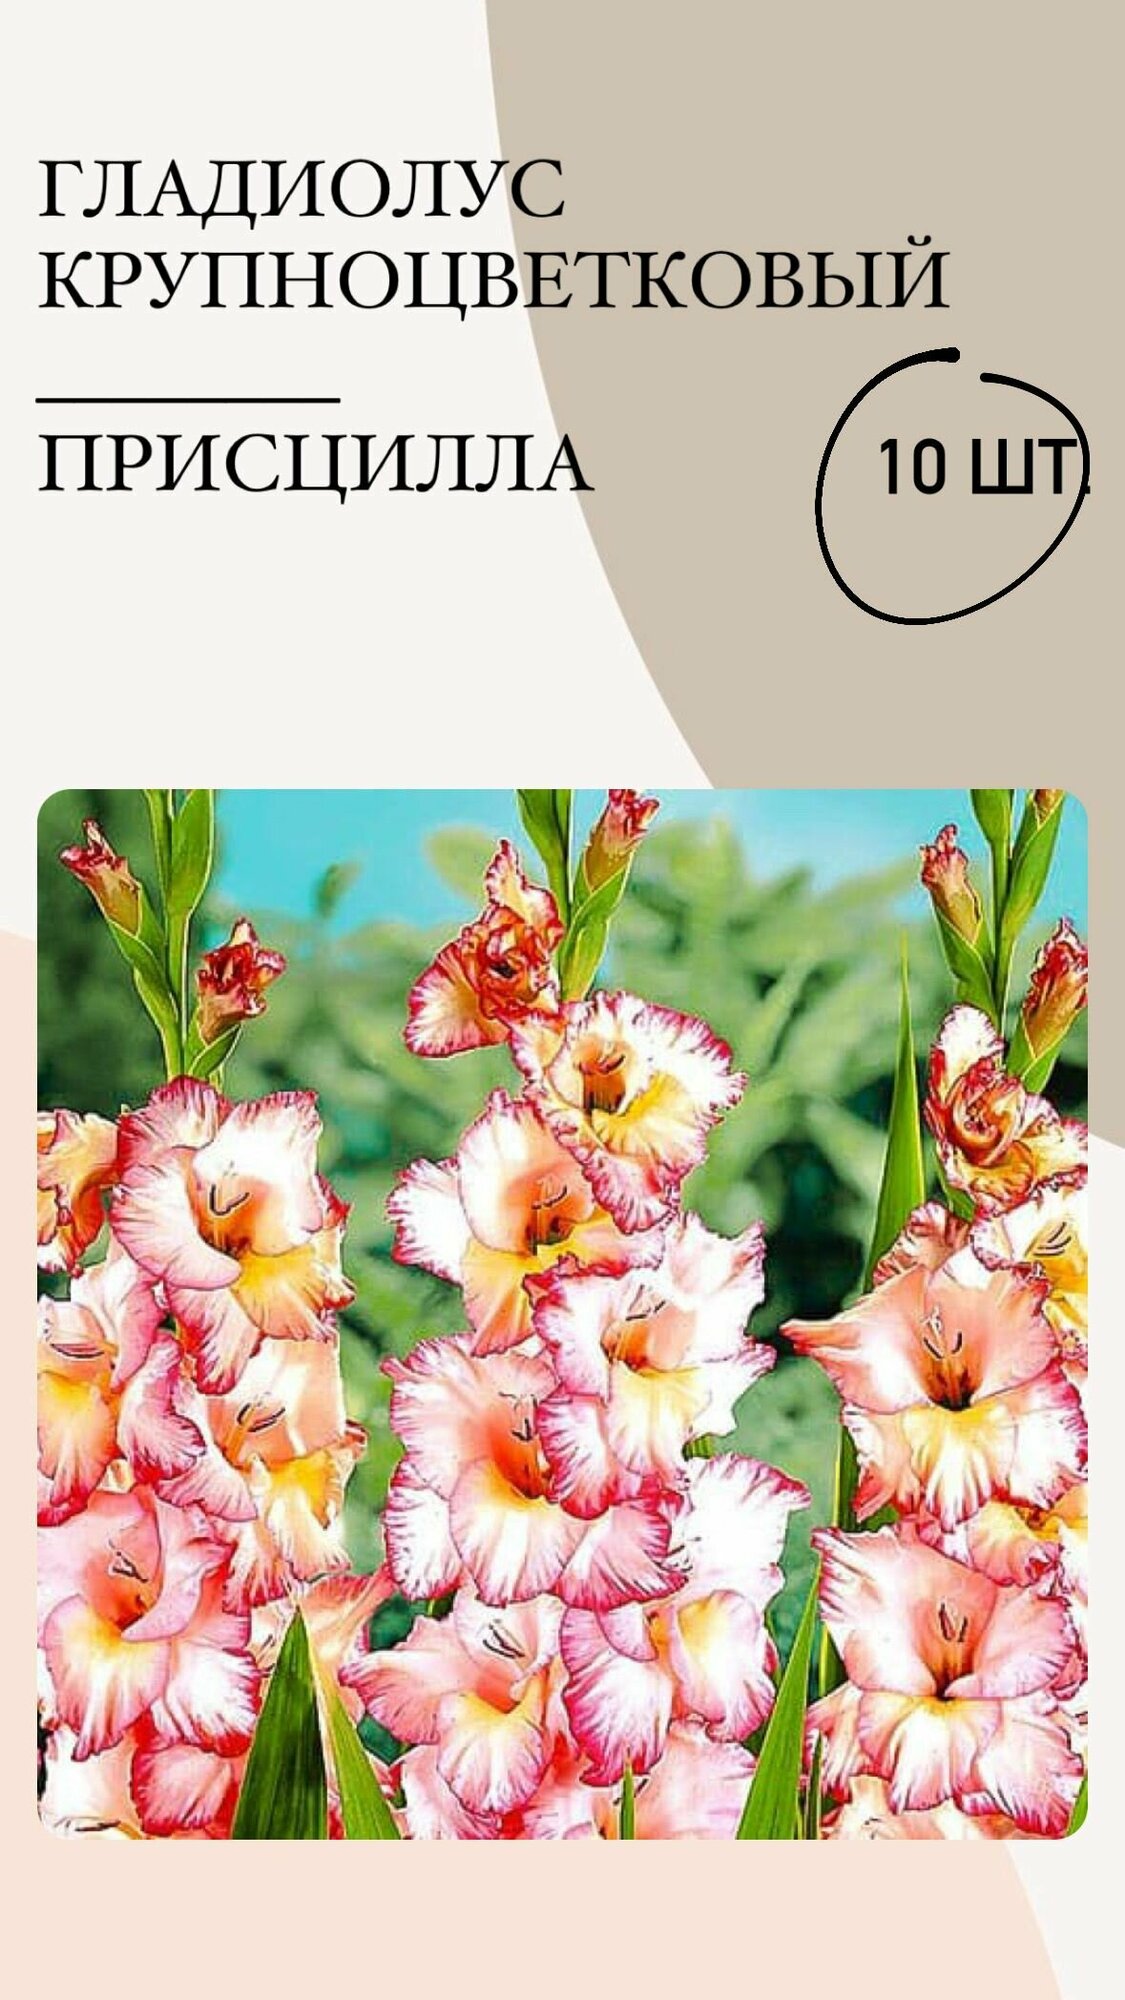 Гладиолус крупноцветковый Присцилла, луковицы многолетних цветов